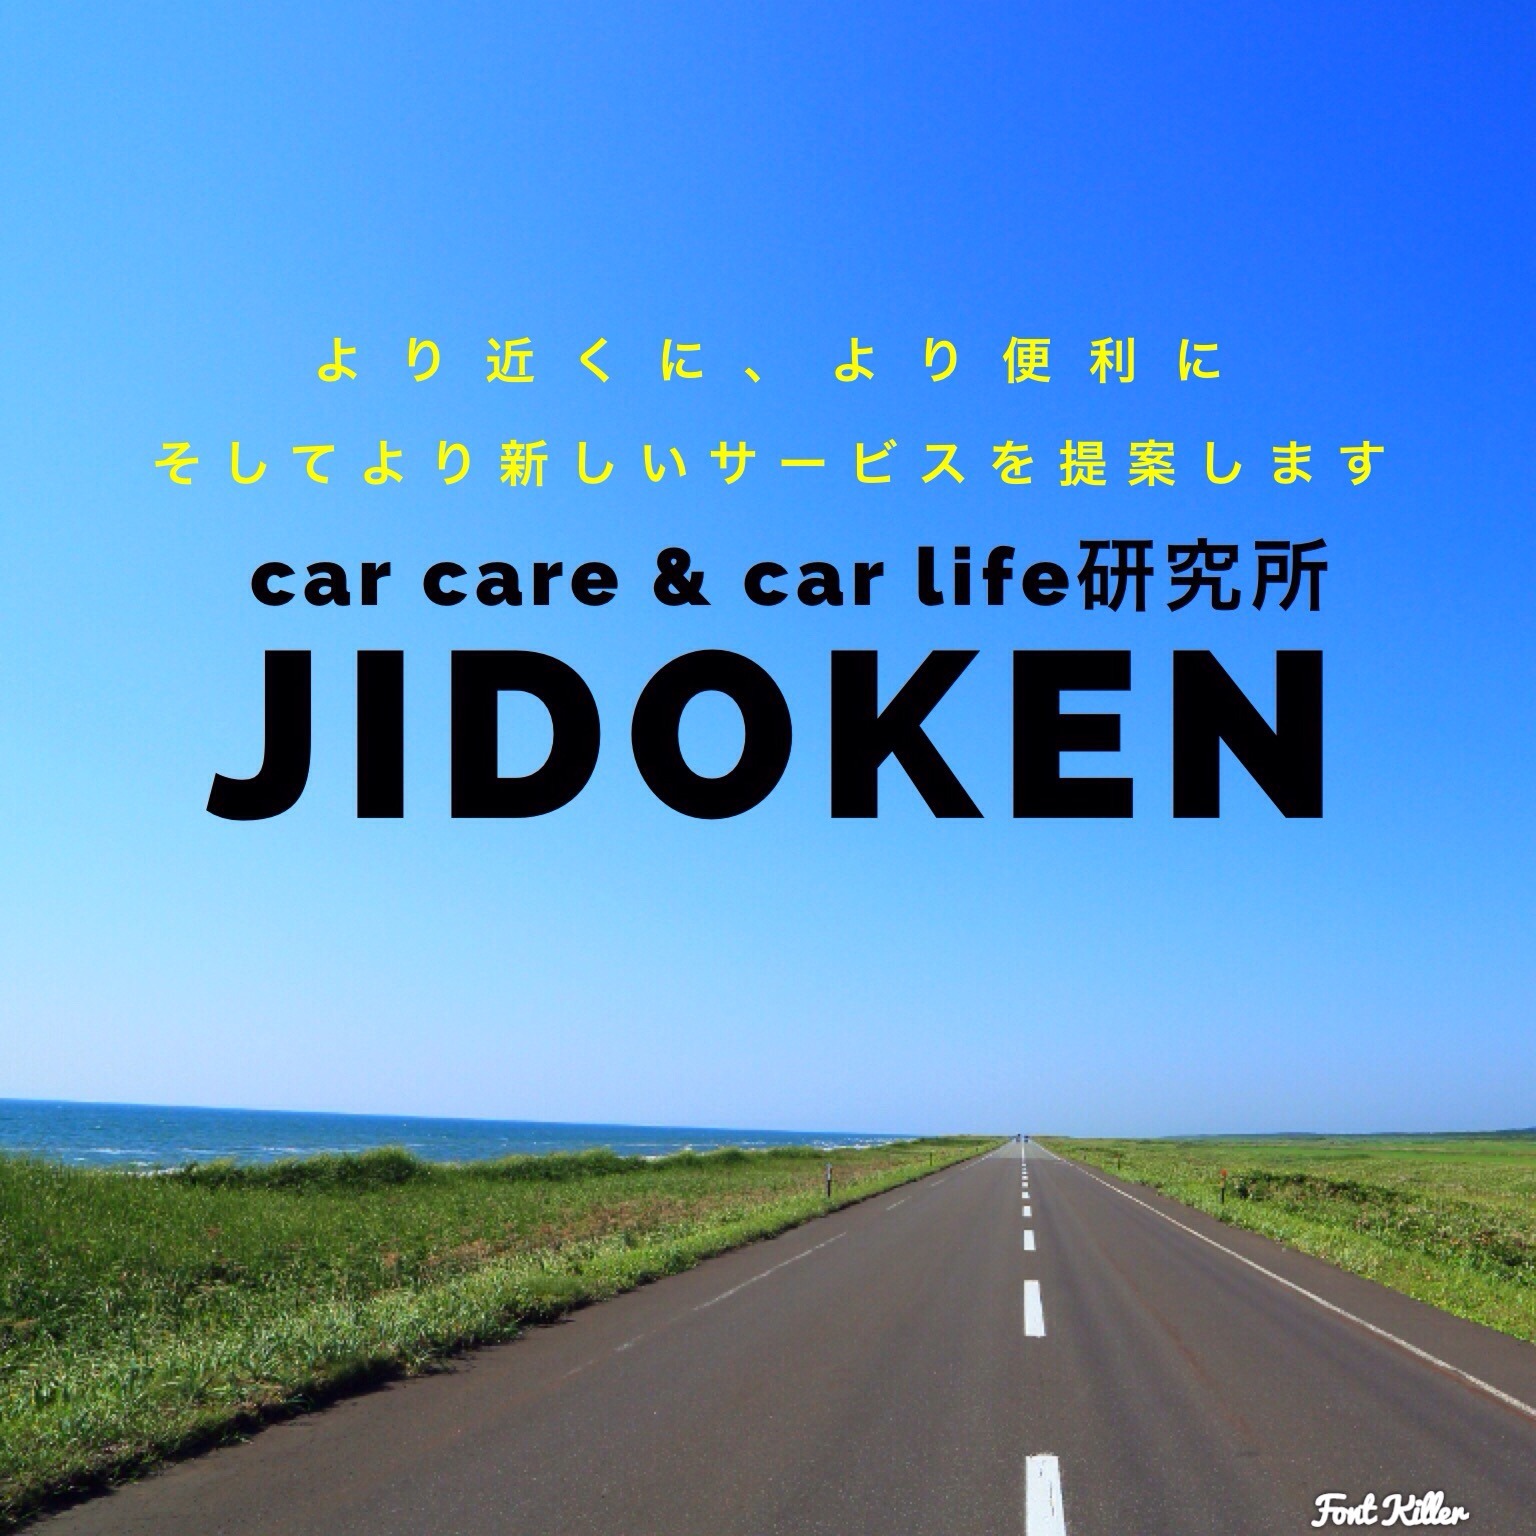 car care & car life 研究所 JIDOKEN